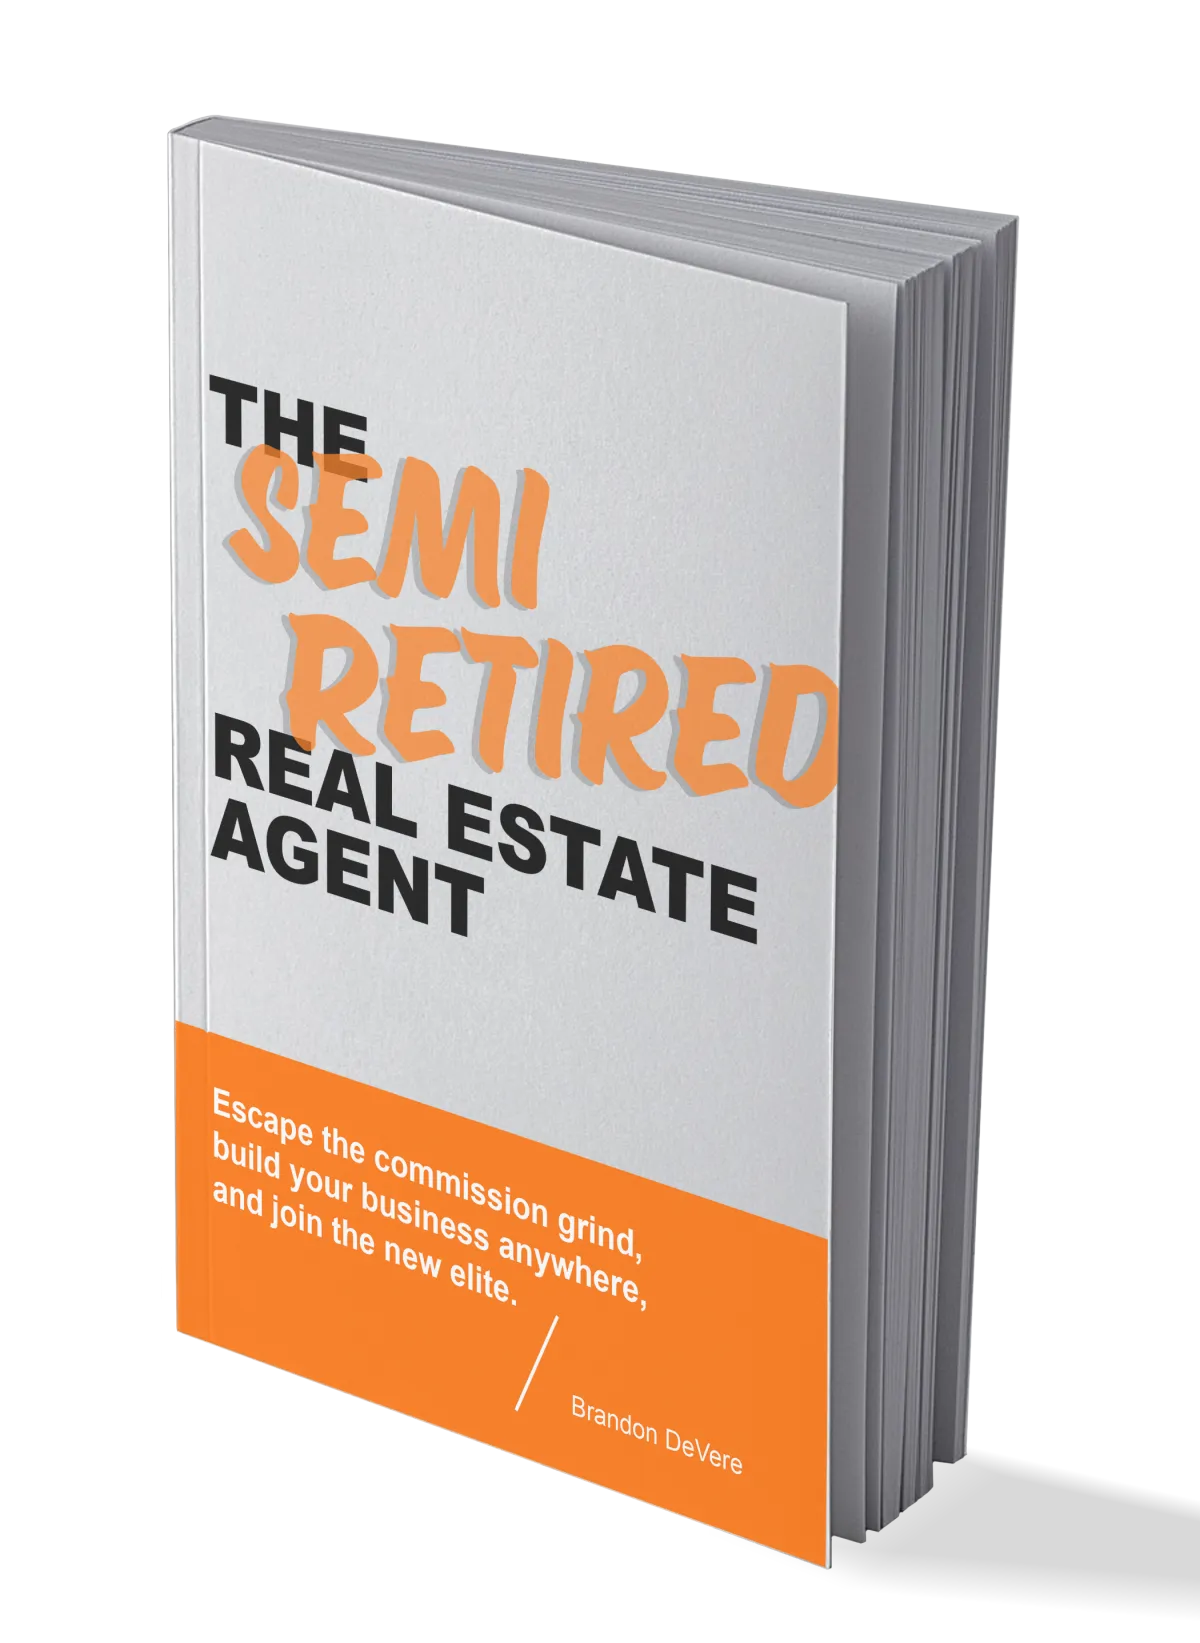 the semi retire real estate agent book by brandon devere